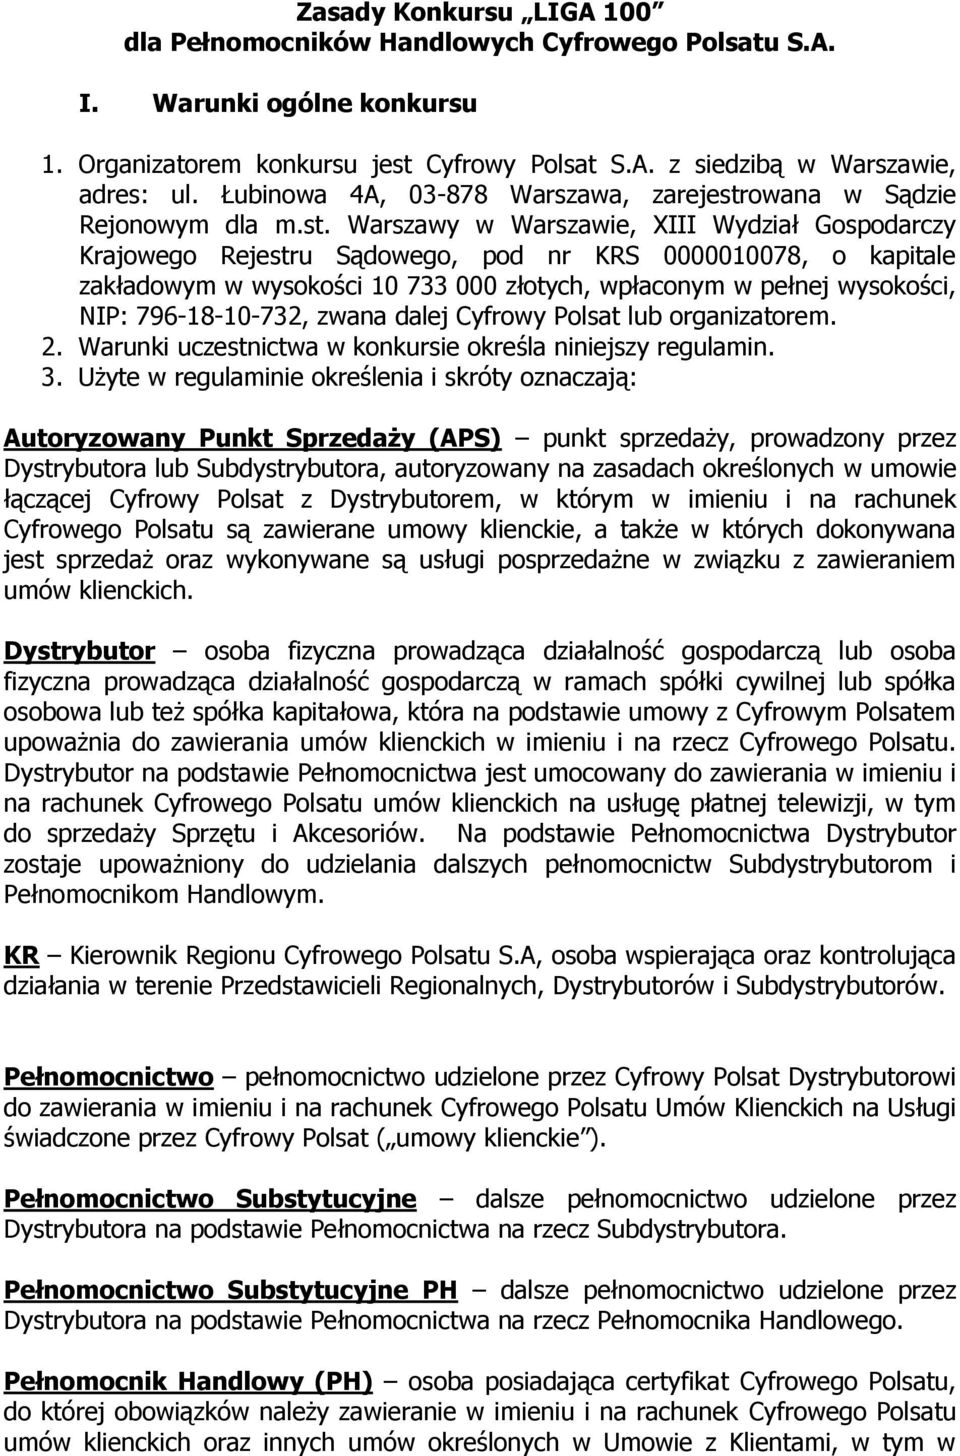 Zasady Konkursu LIGA 100 dla Pełnomocników Handlowych Cyfrowego Polsatu  S.A. - PDF Darmowe pobieranie